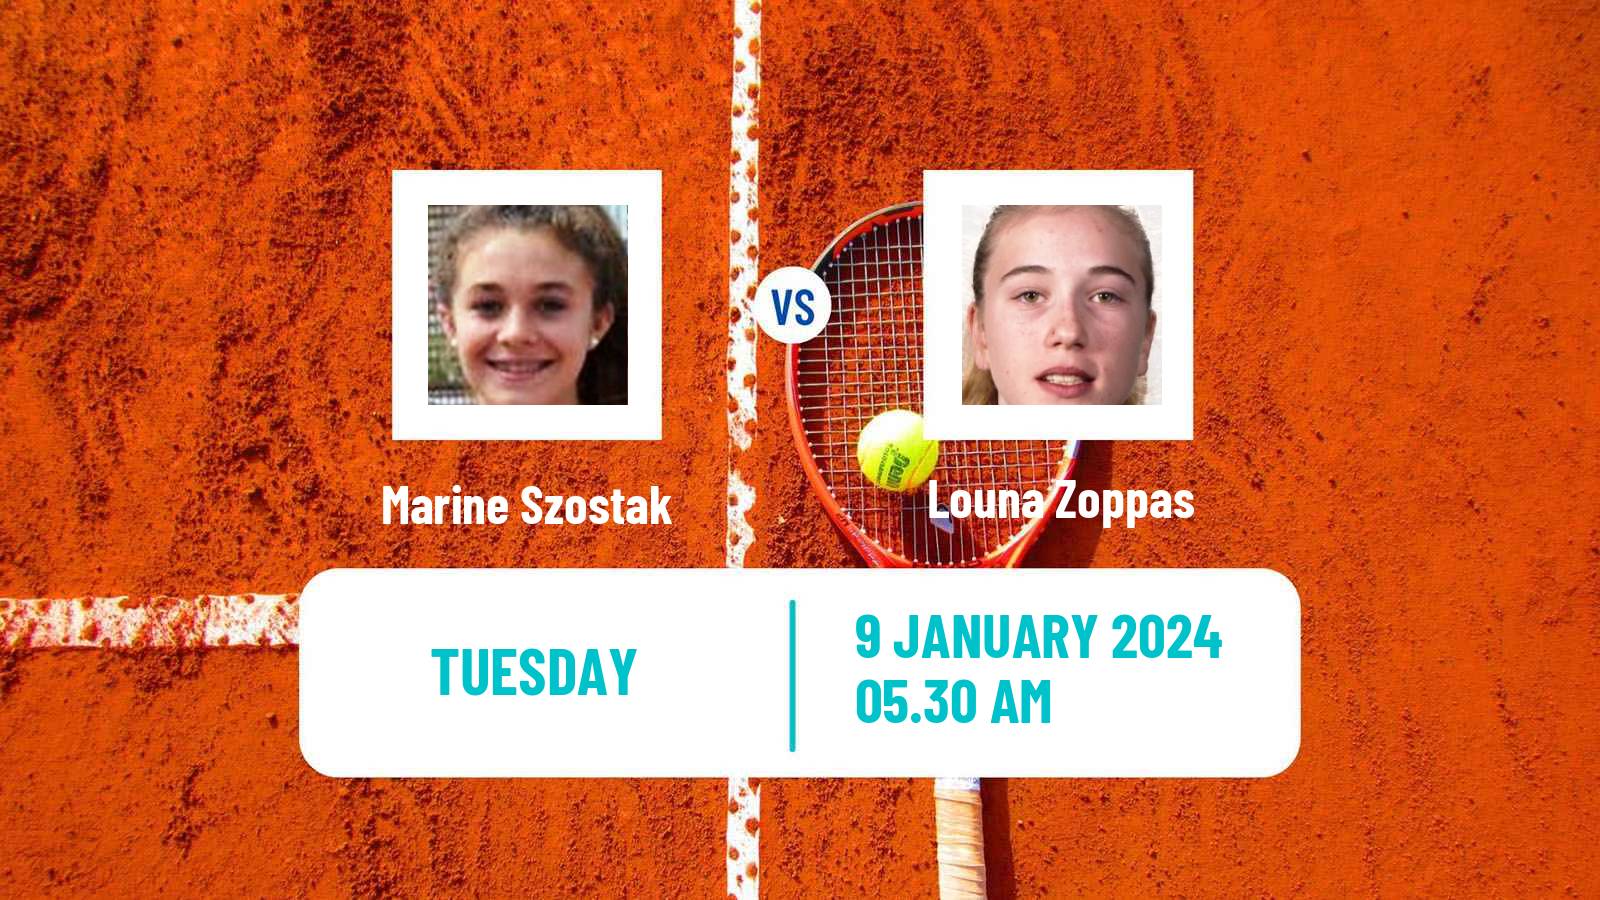 Tennis ITF W15 Esch Alzette Women Marine Szostak - Louna Zoppas